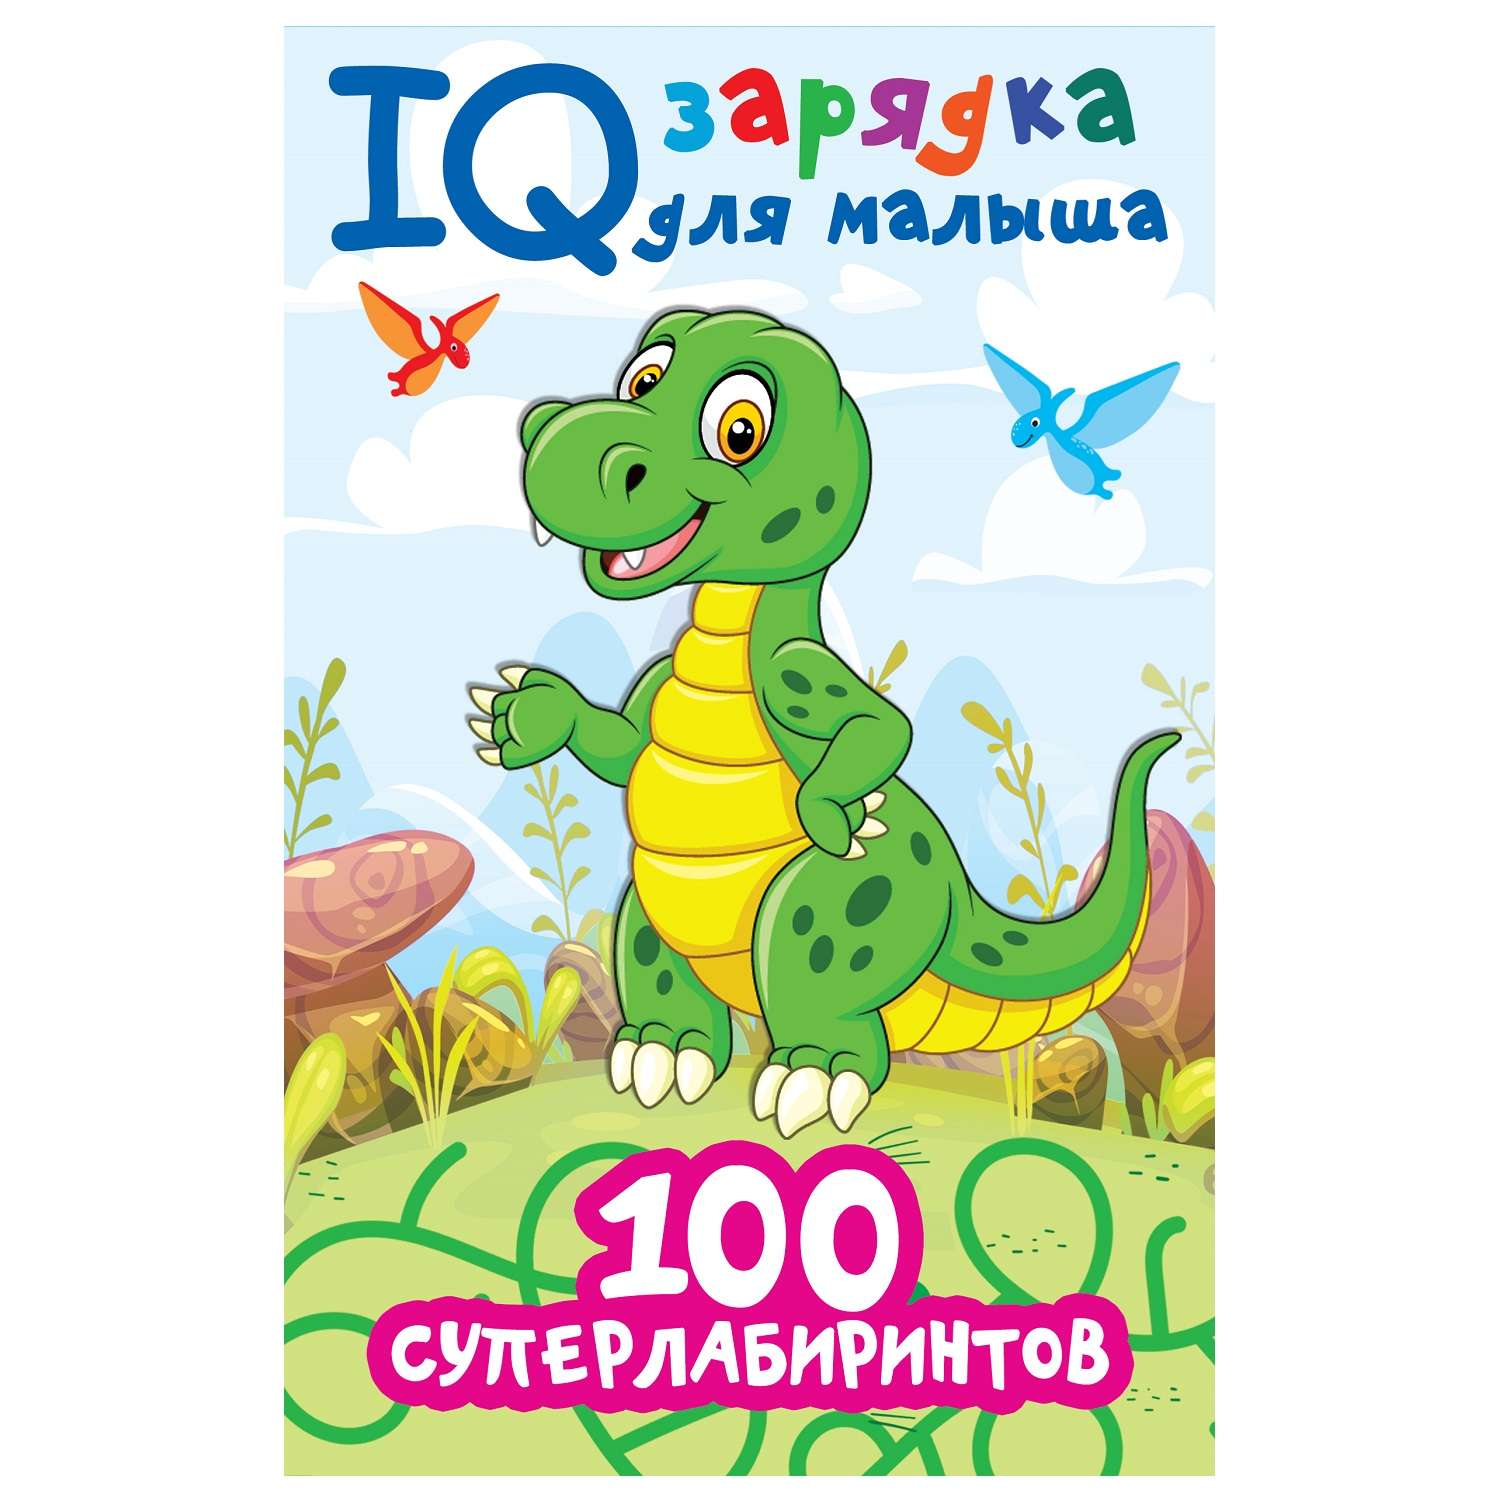 Книга АСТ IQ зарядка для малыша 100 суперлабиринтов - фото 1